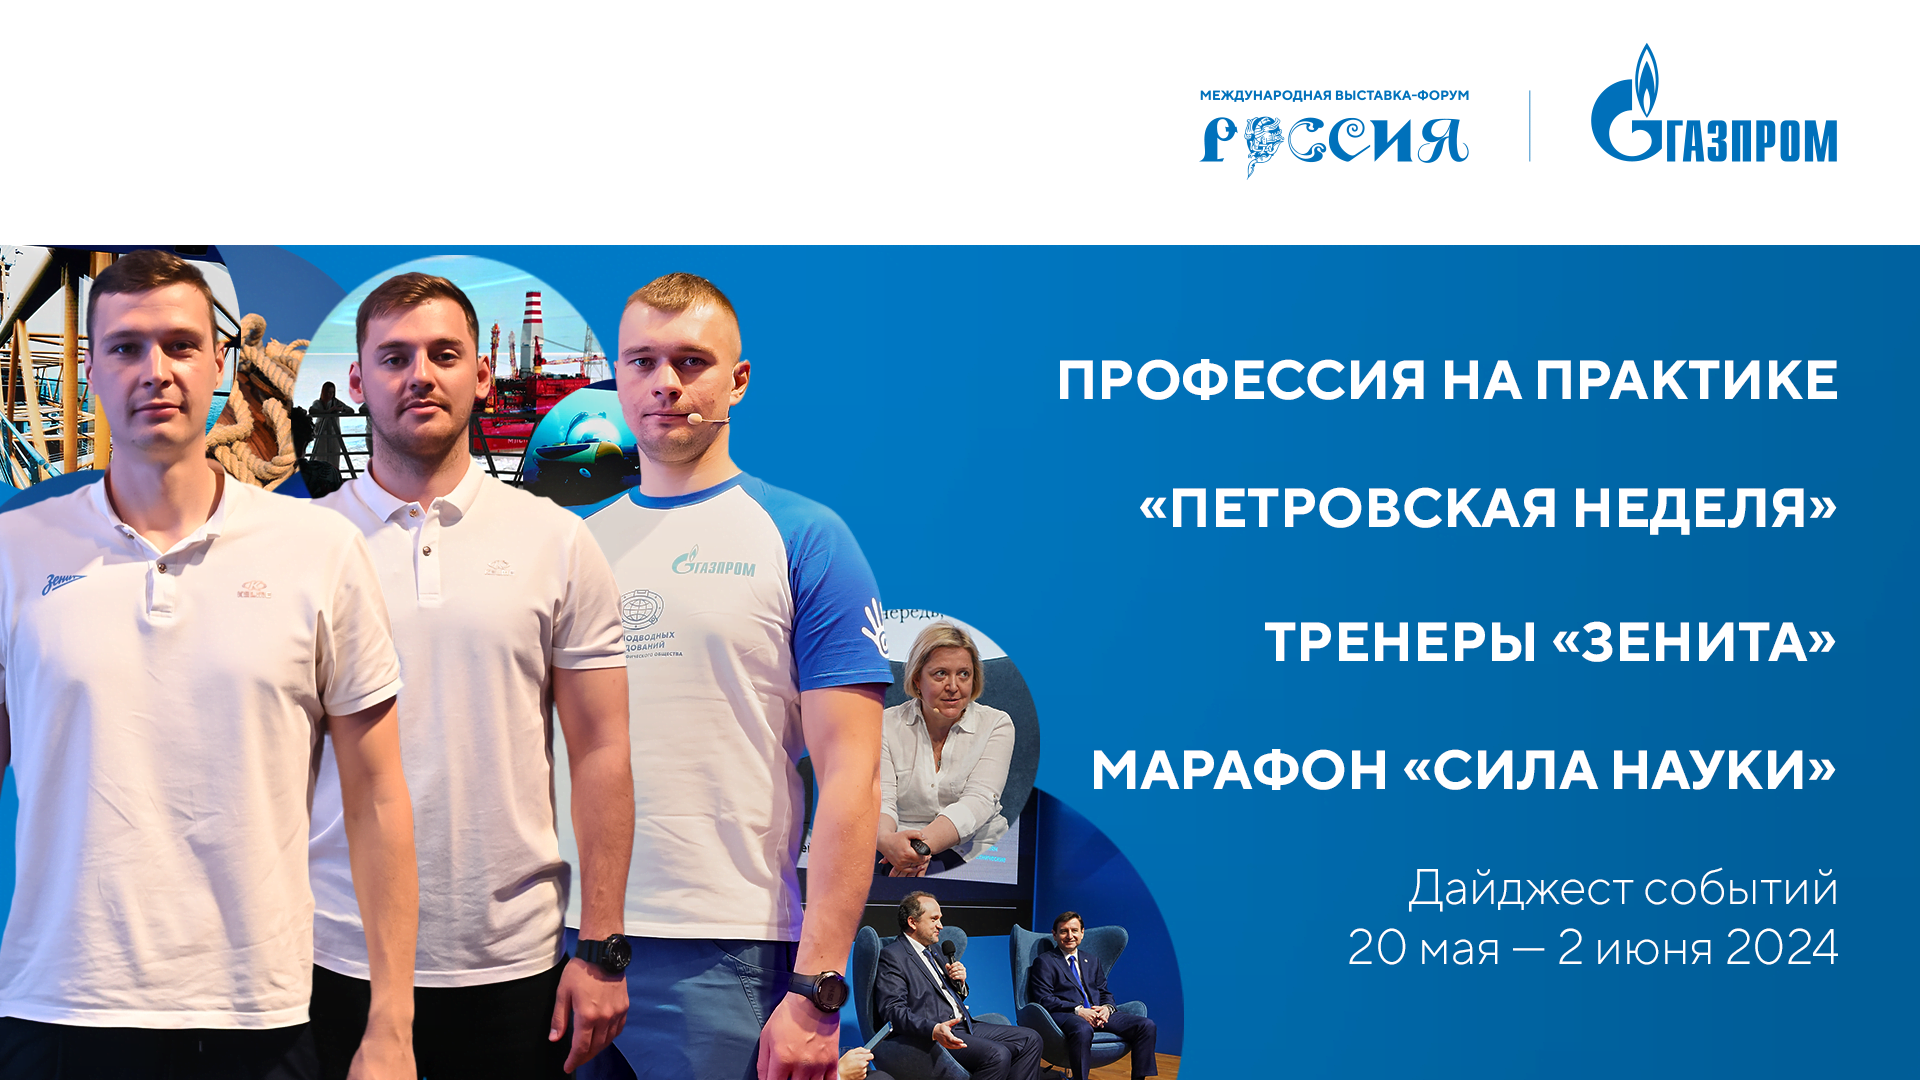 Павильон «Газпром» | Дайджест 20 мая - 2 июня